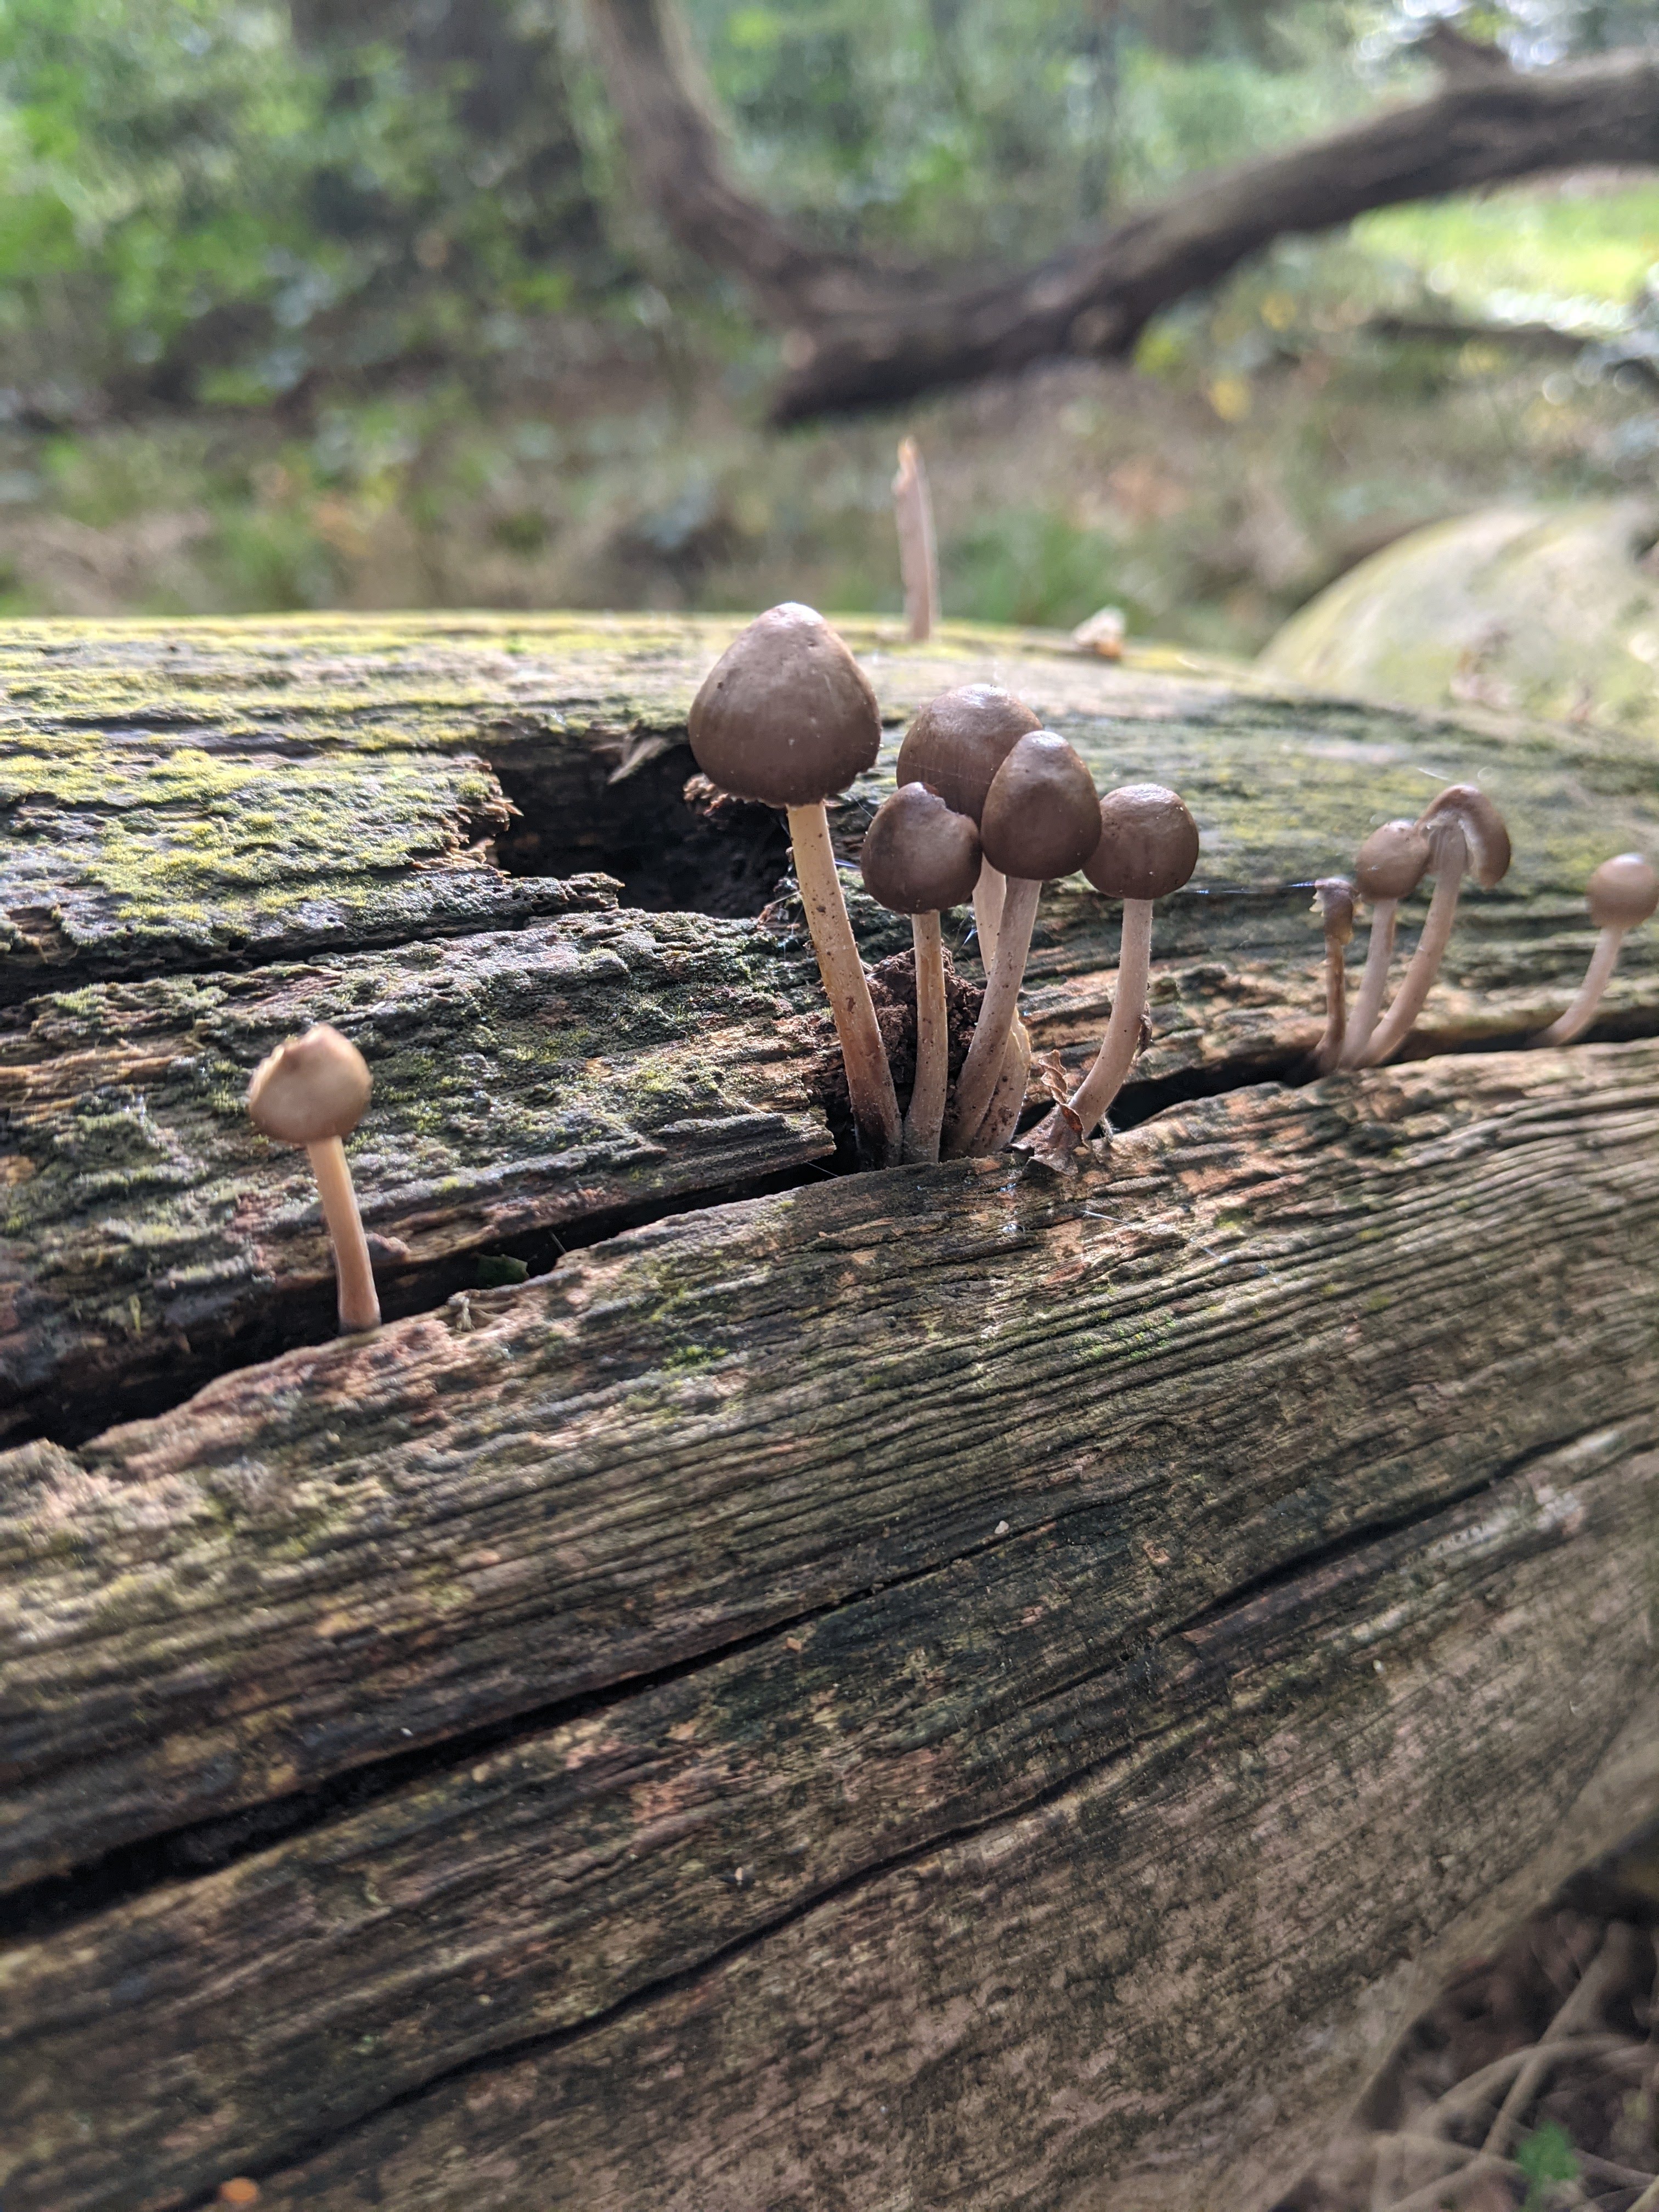 Brown mushrooms or toadstools growing on a tree